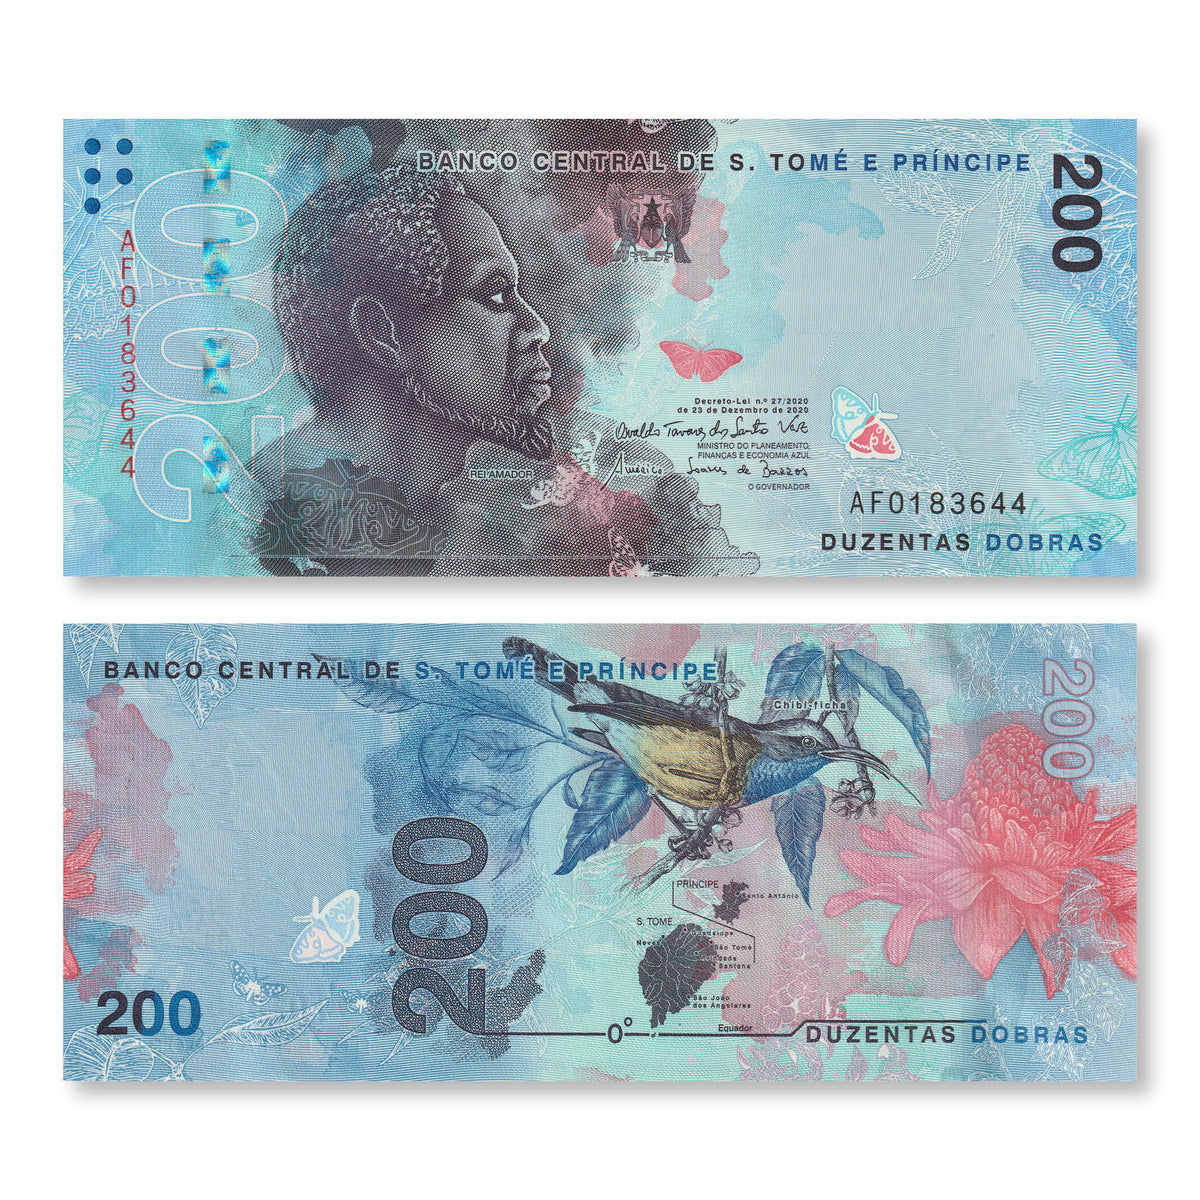 São Tomé & Príncipe 200 Dobras, 2020, B316a, UNC - Robert's World Money - World Banknotes